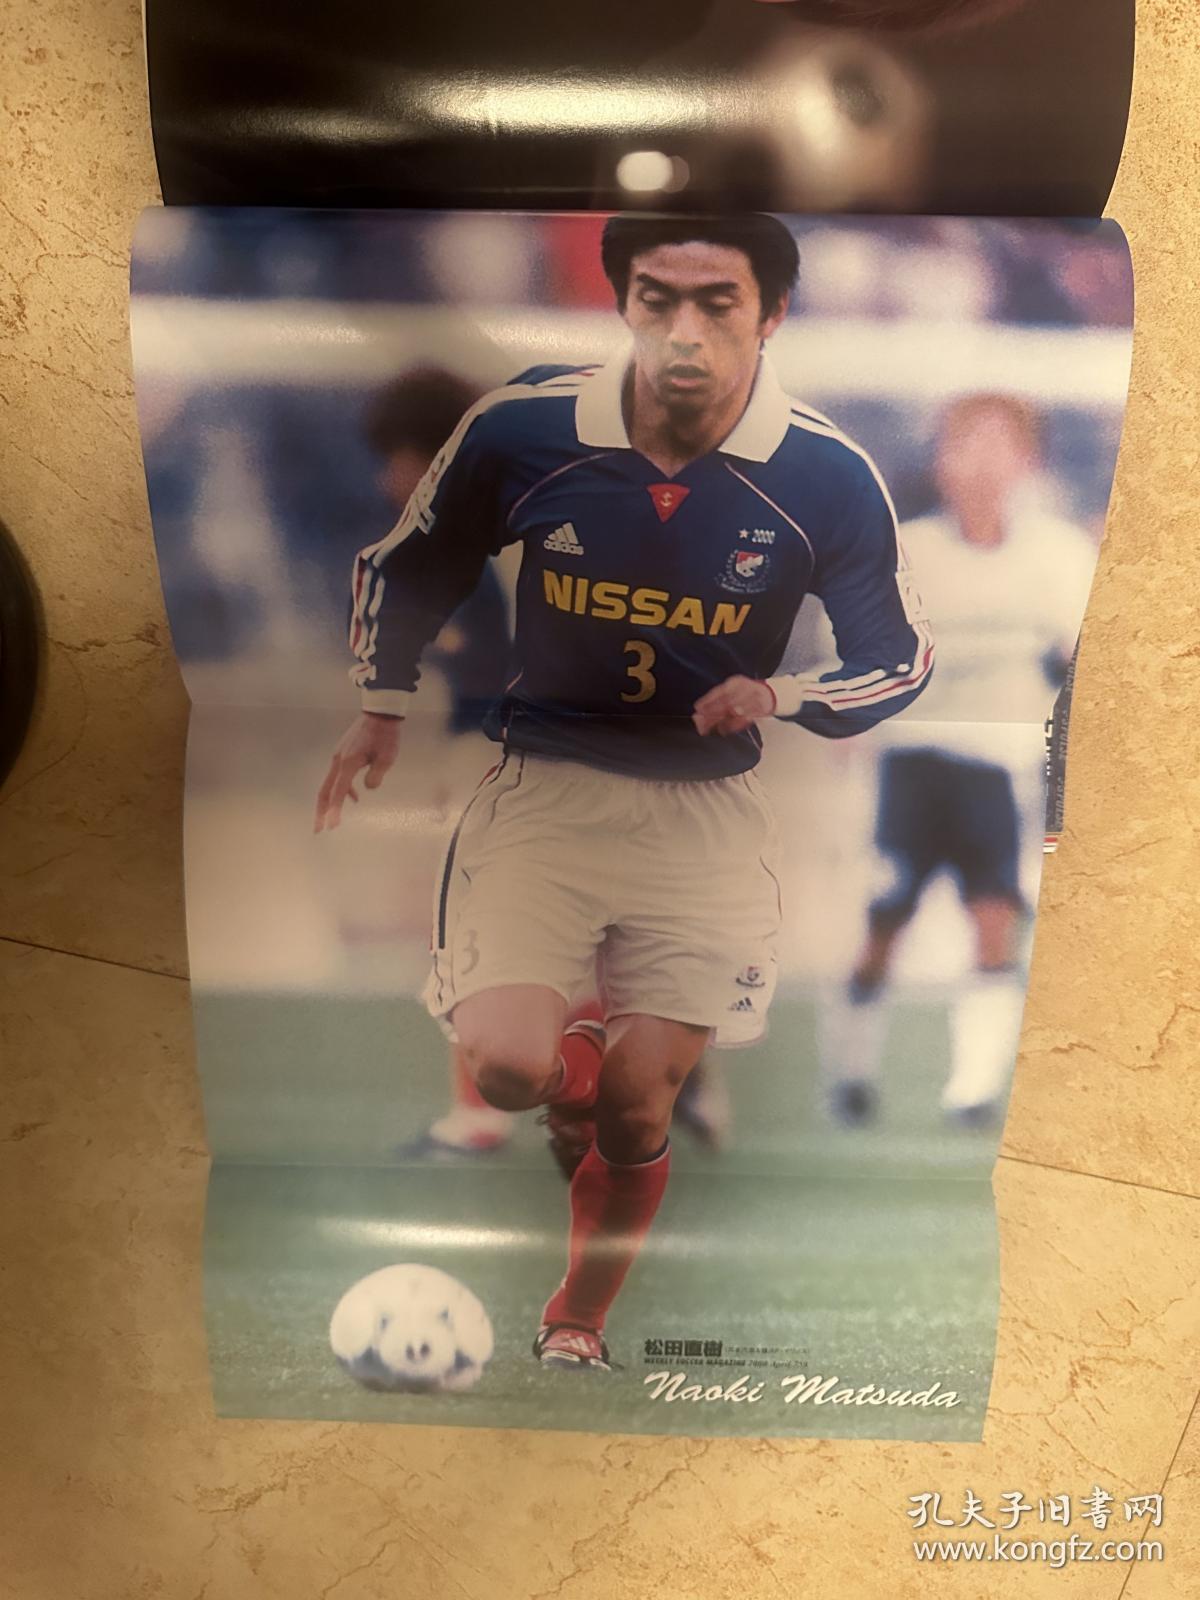 2000日本足球周刊文摘足球体育特刊杂志 世界杯内容日本《足球》原版带双面海报包邮快递